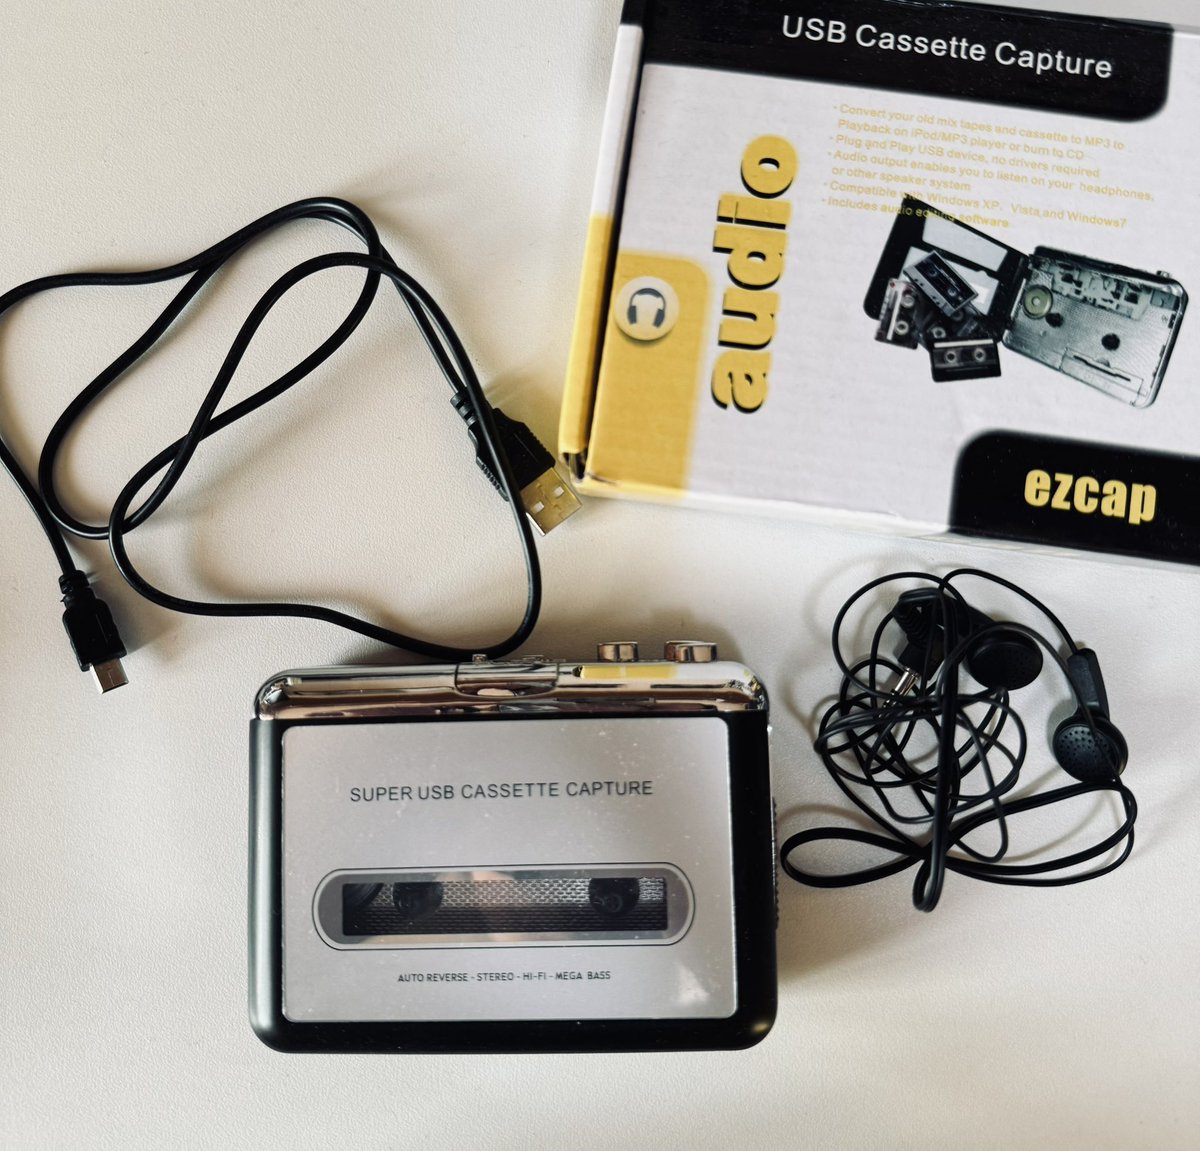 พร้อมส่ง

เครื่องเล่นเทป tape cassette player 

ส่งต่อ 290 รวมส่ง
(ซื้อมา 400)

ใหม่มากคับ ยังไม่ได้ลอกฟิล์มเลย
ทักมาดูเพิ่มได้ค้าบ 
#tape #tapecassette #tapecassetteplayer #tapeplayer #เทปคาสเซ็ท #เทปเพลง #เครื่องเล่นเทป